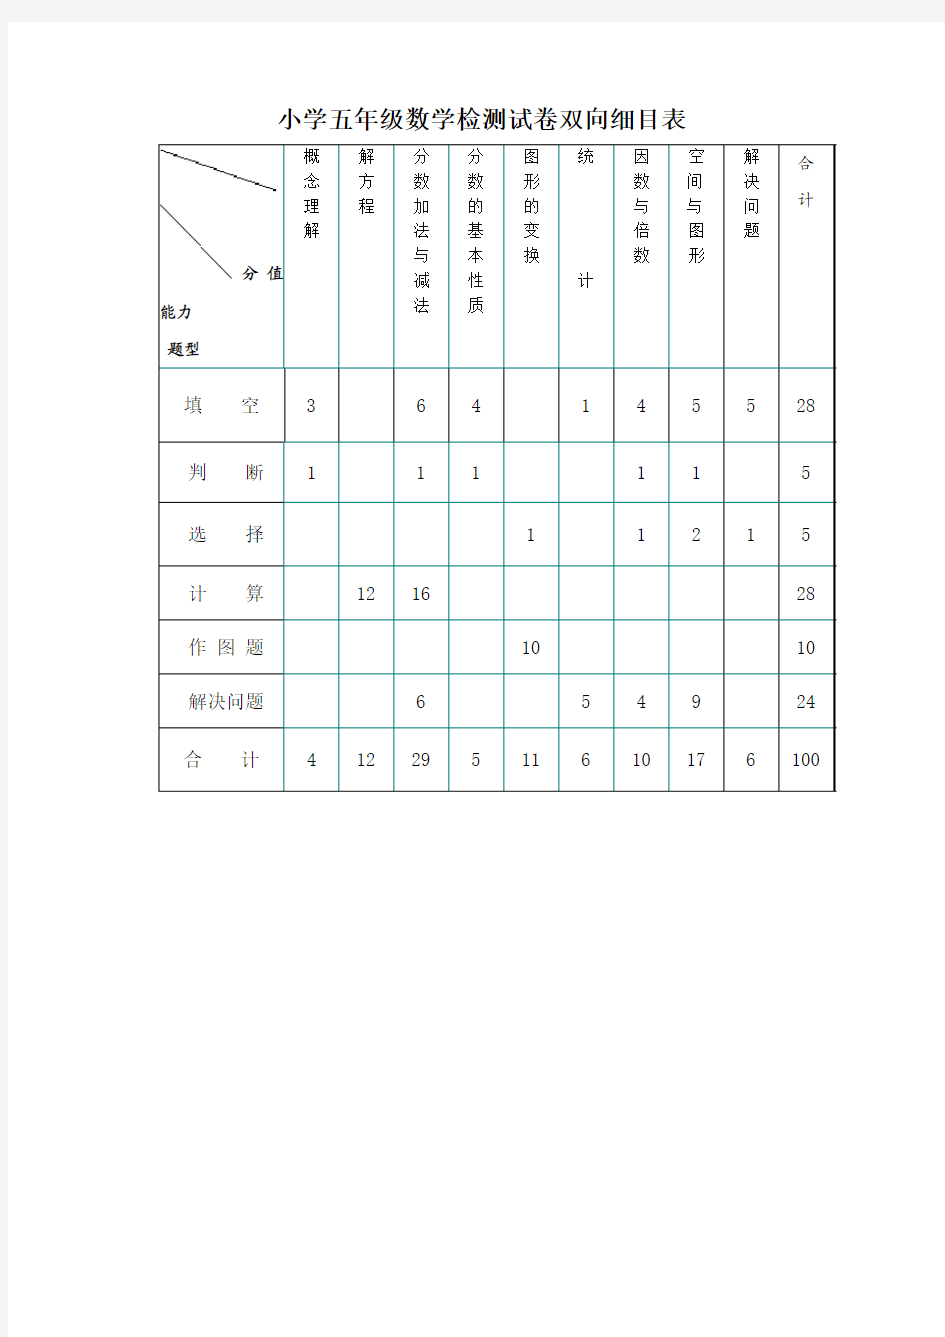 3.小学五年级数学检测试卷双向细目表(范例)